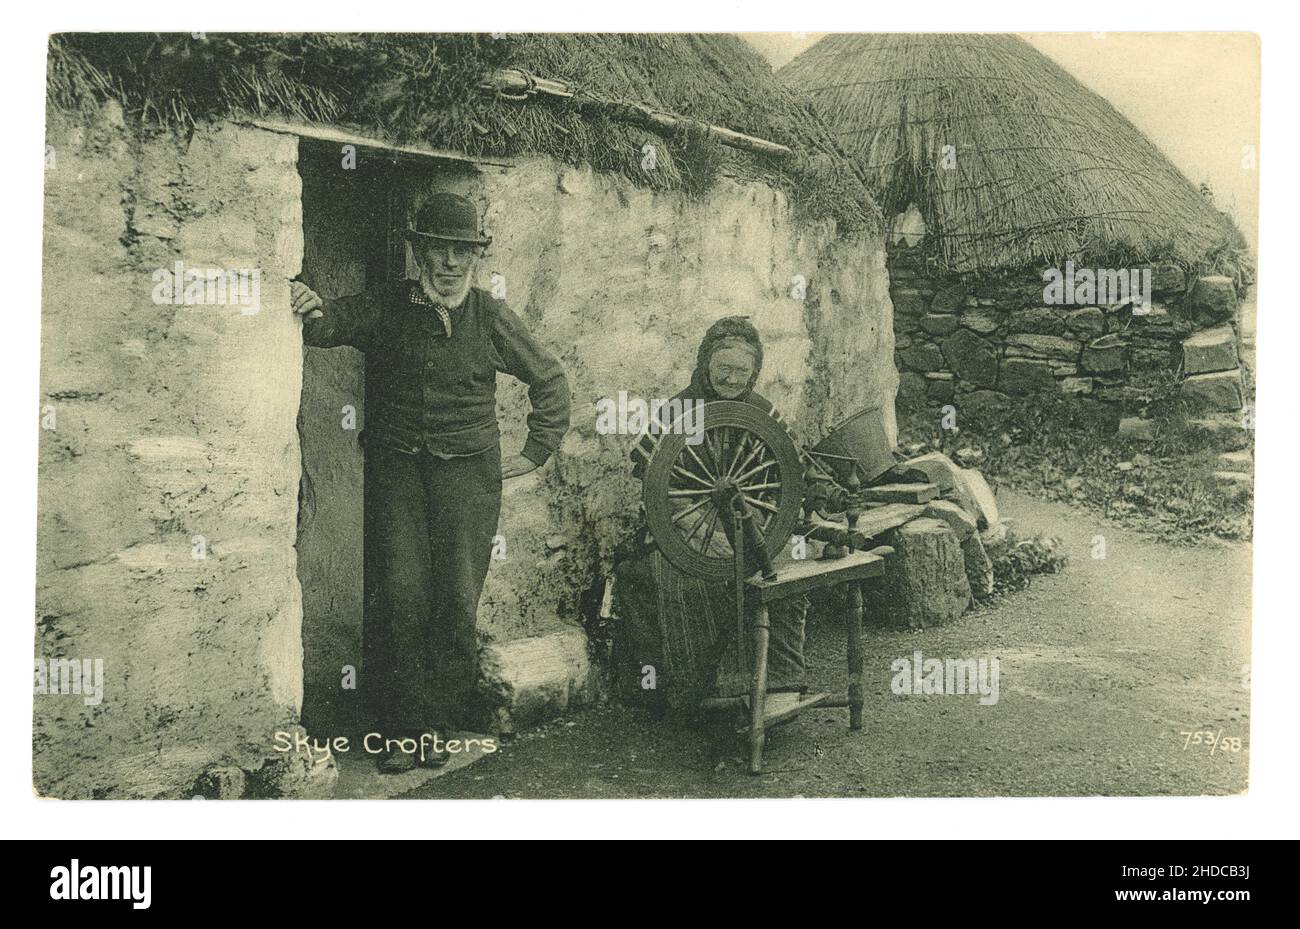 Ursprüngliche Postkarte aus der Edwardianischen Ära des frühen 20. Jahrhunderts von Skye-Croftern, Pächtern, außerhalb ihrer Croft hat die alte Frau ein Spinnrad und spinnt Wolle - Lebensunterhalt. Gedruckt von der zuverlässigen Serie von W R & S William Ritchie and Sons - um 1905. Isle of Skye, Innere Hebriden, Schottland, Großbritannien Stockfoto